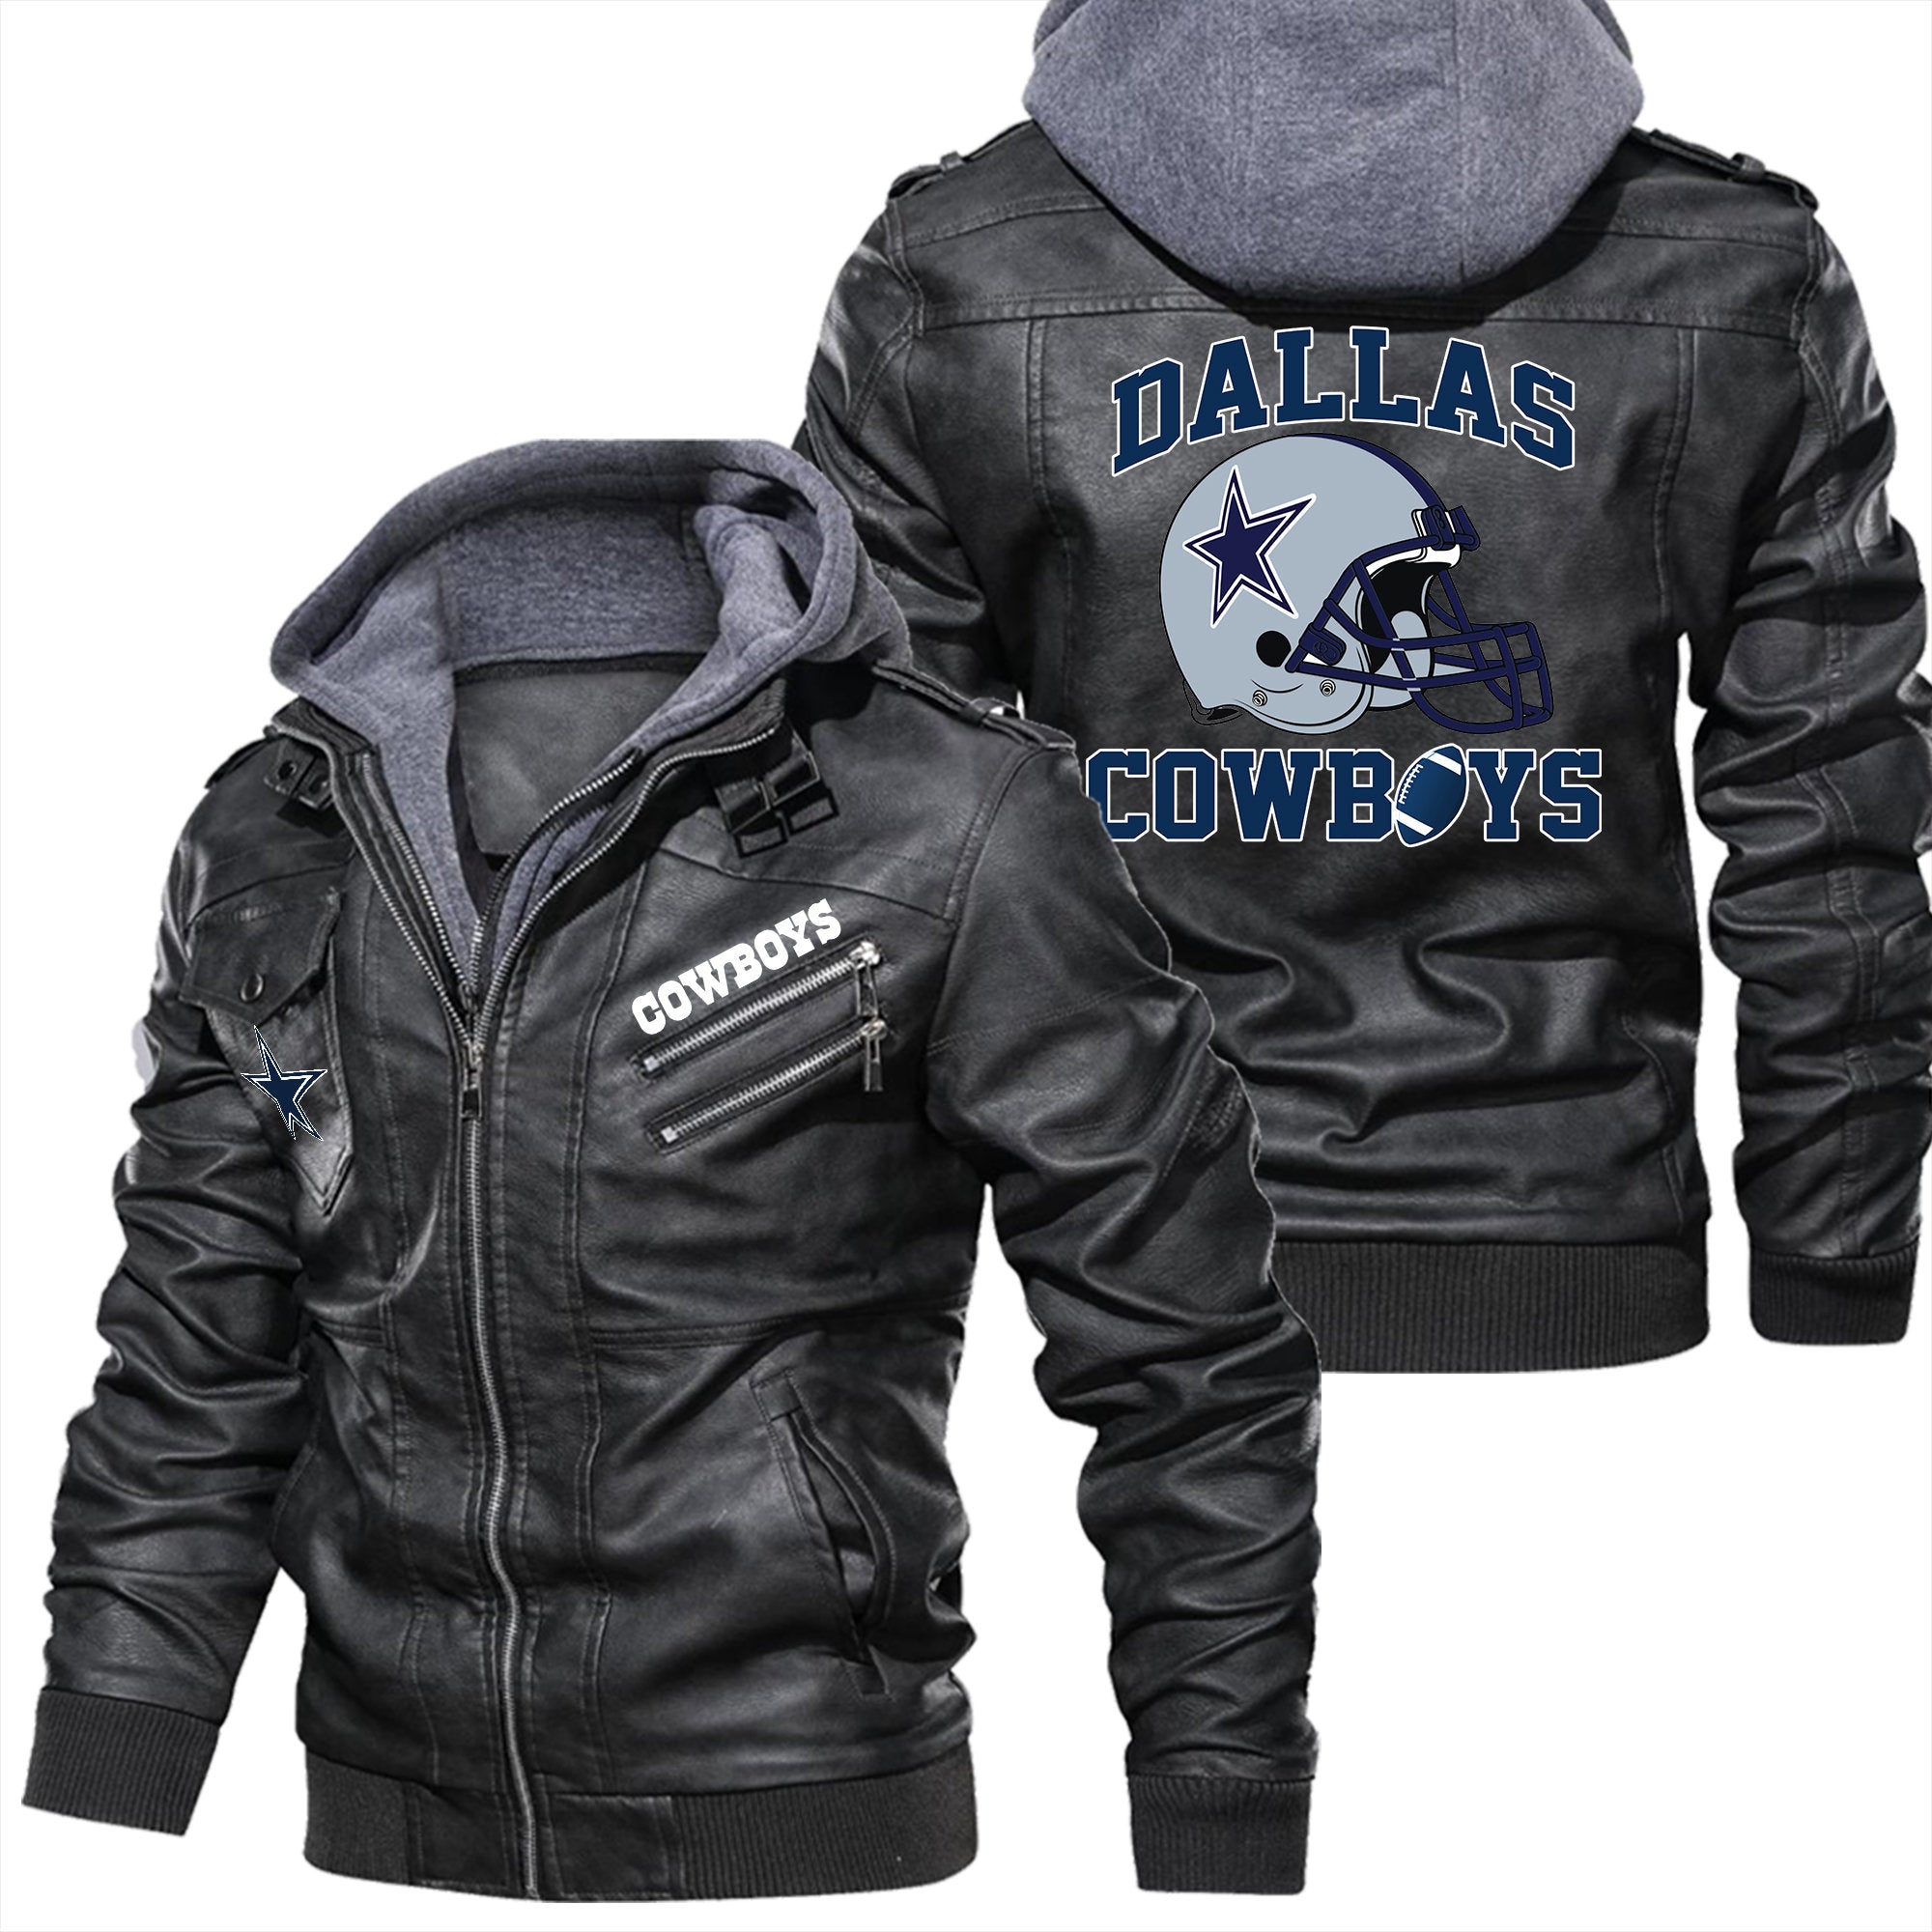 Dallas Cowboys Helmet 3D Leather Jacket